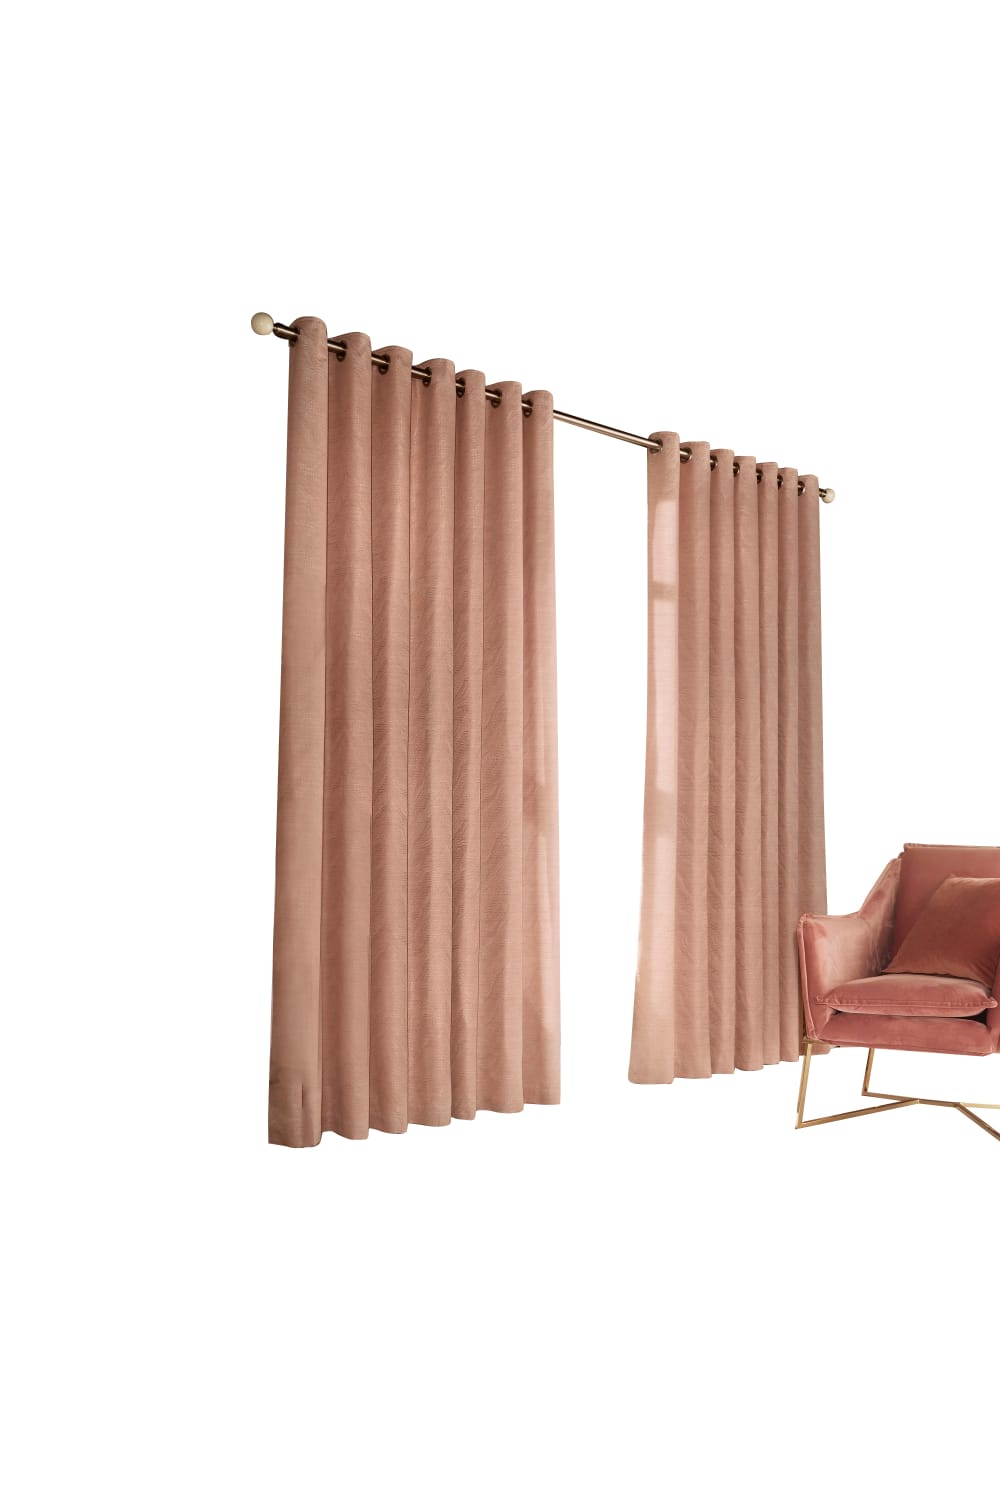 Furn Himalaya Jacquard Design Eyelet Curtains (Pair) (Blush Pink) (66x90in)